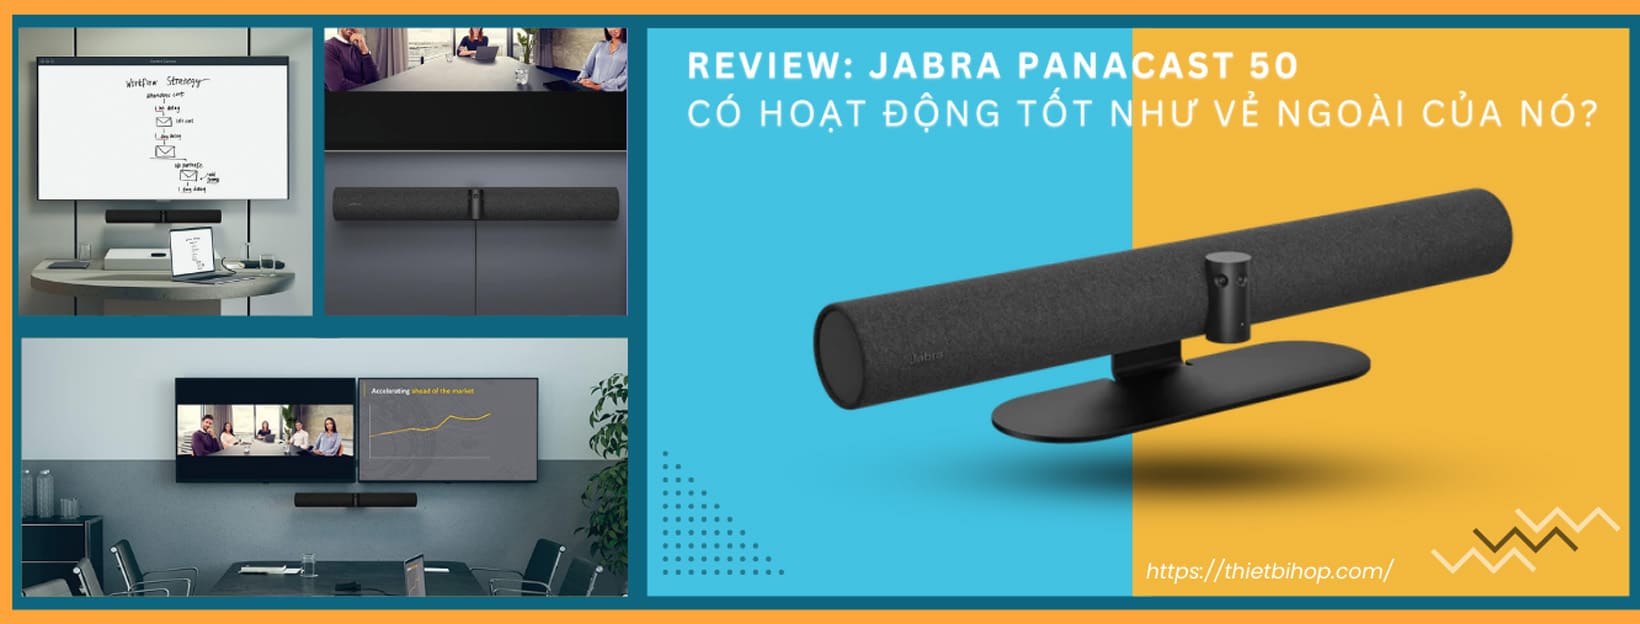 review jabra panacast 50 có hoạt động tốt như vẻ ngoài của nó